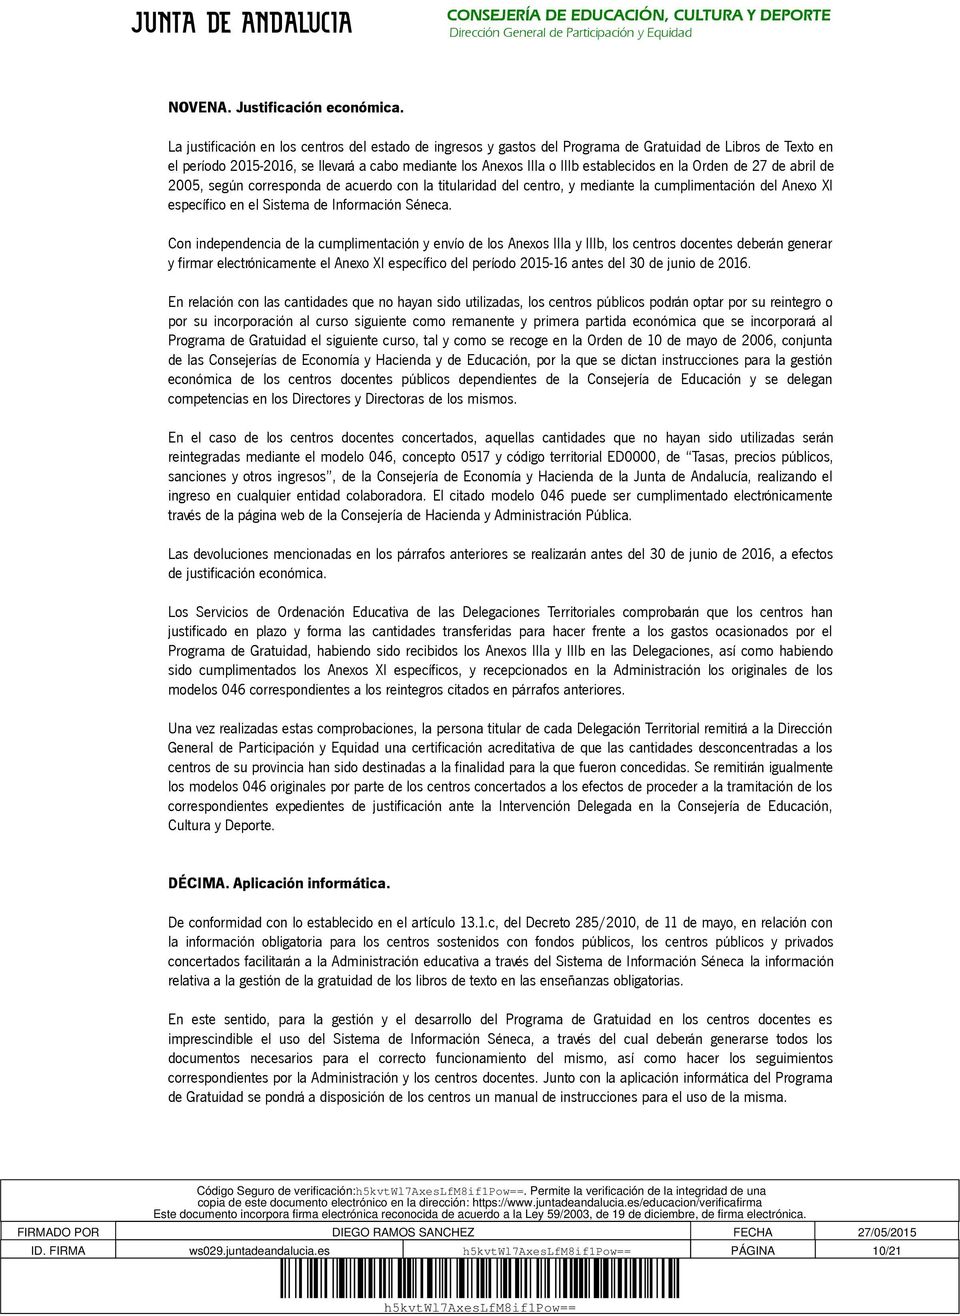 la Orden de 27 de abril de 2005, según corresponda de acuerdo con la titularidad del centro, y mediante la cumplimentación del Anexo XI específico en el Sistema de Información Séneca.